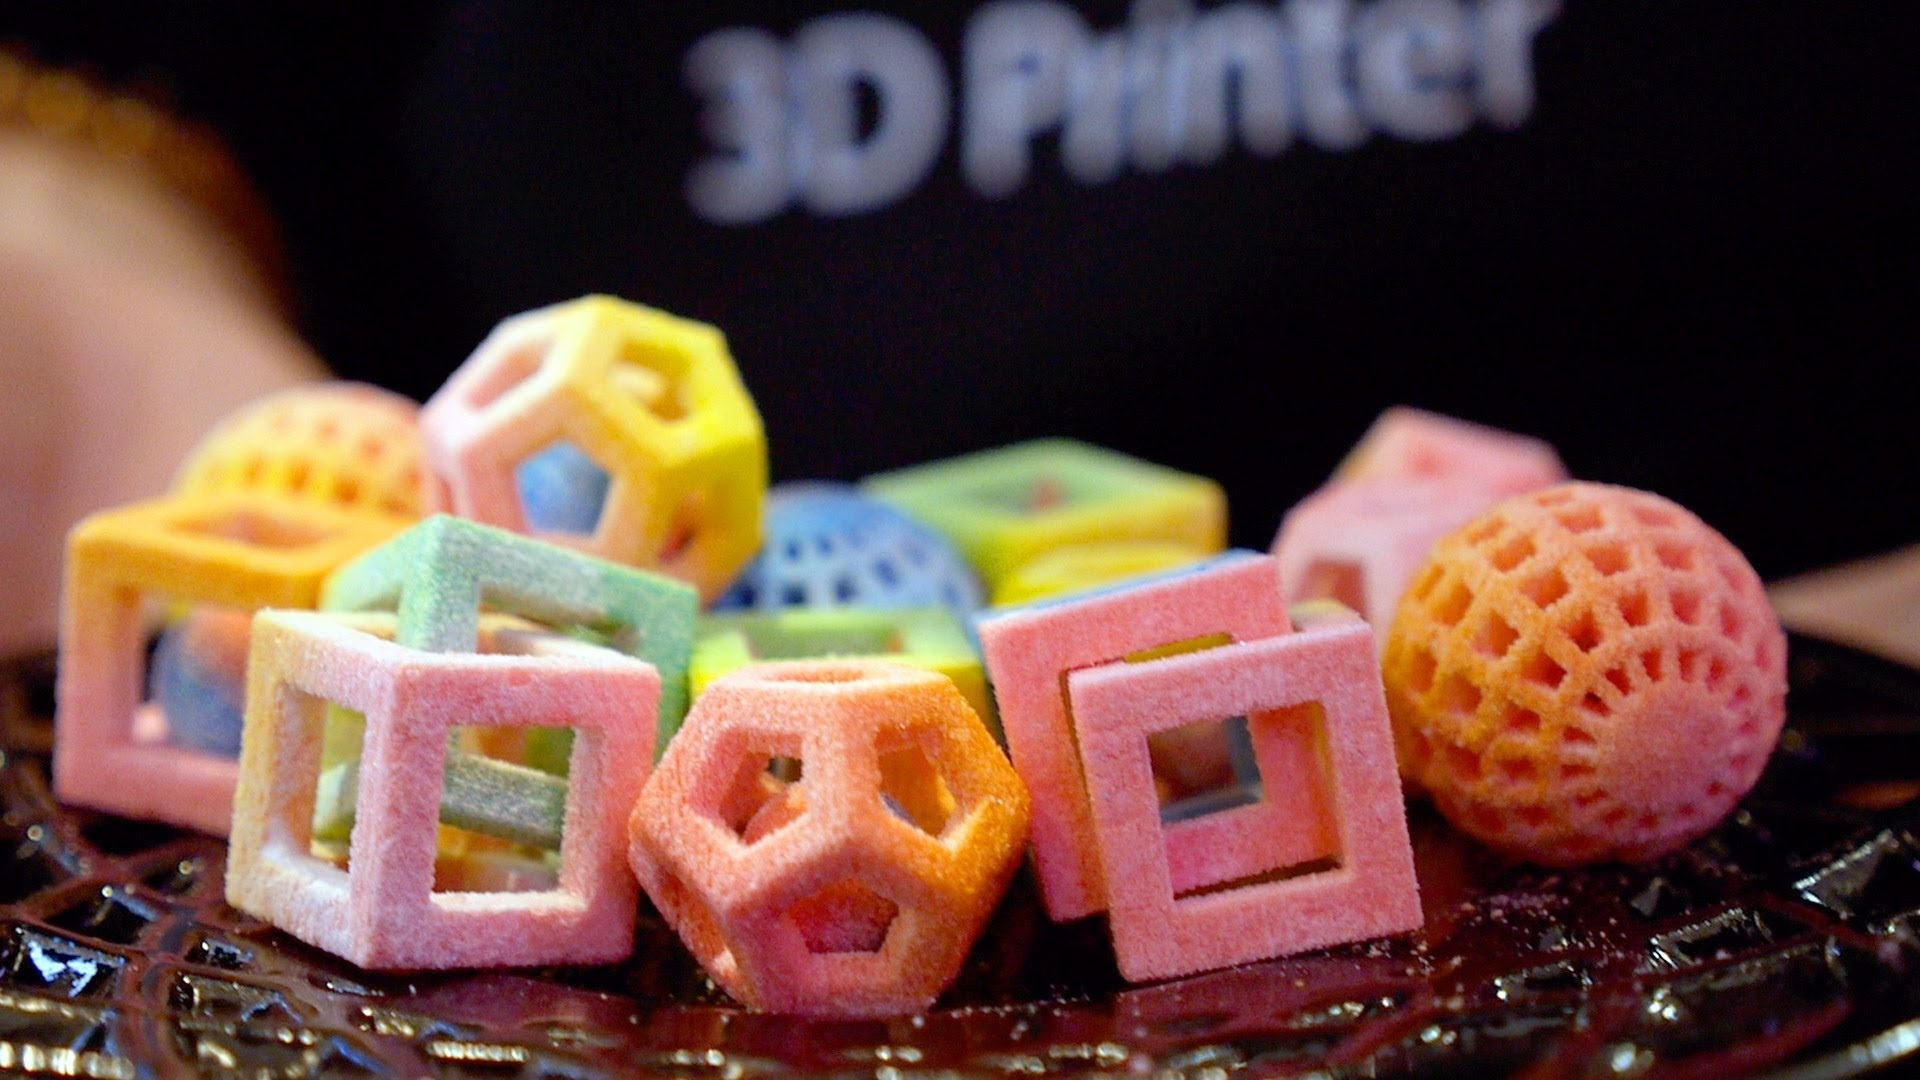 Бизнес идея: производство 3D-сладостей